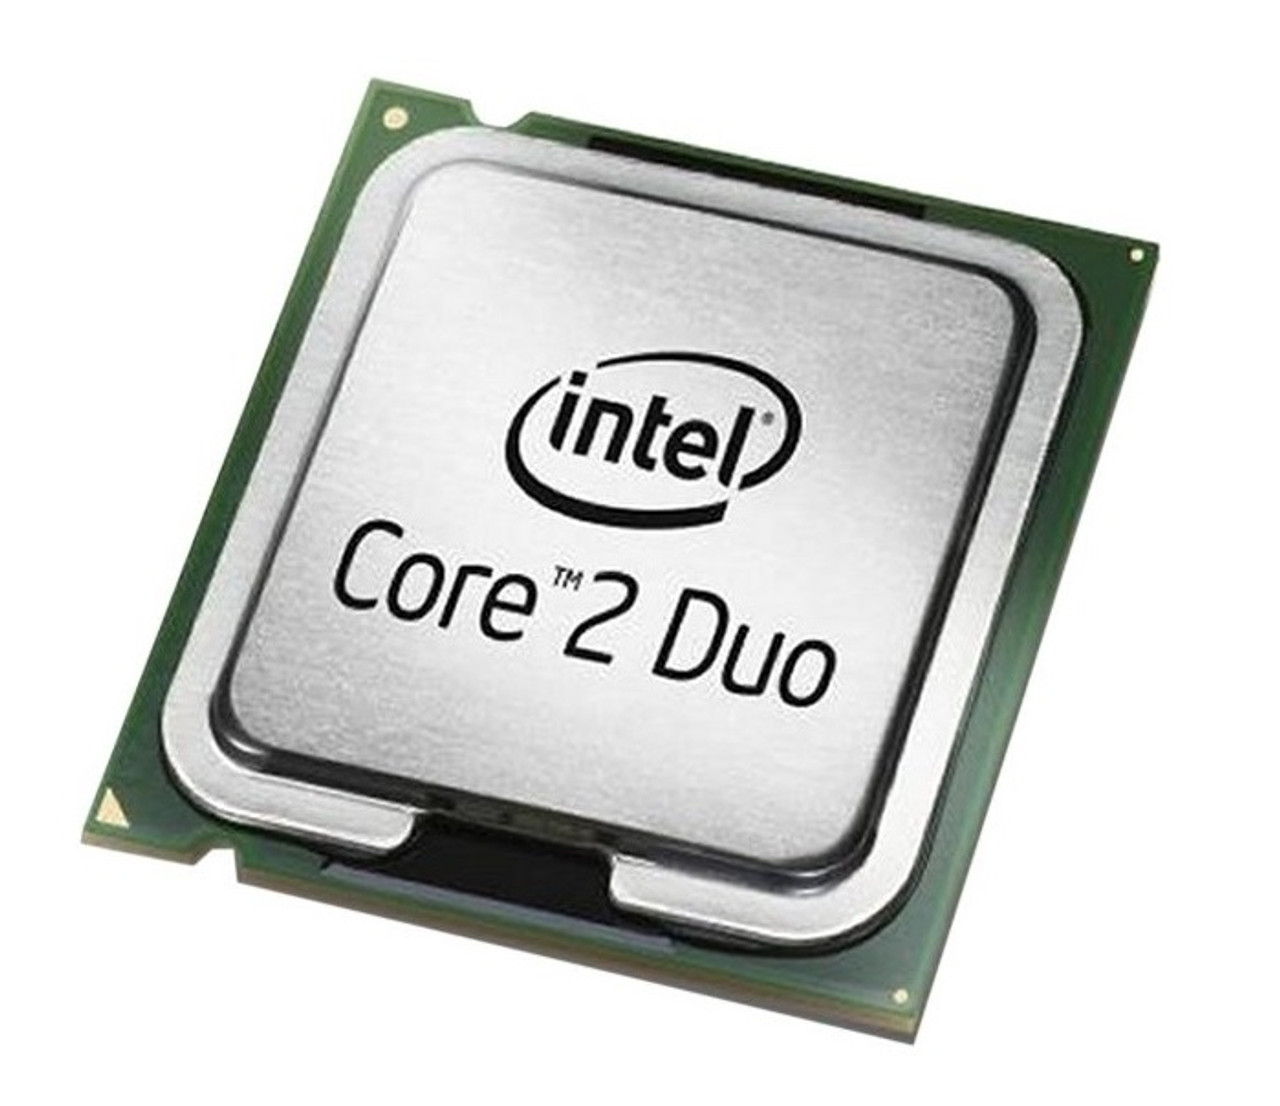 223-6736 - Dell 1.66GHz 667MHz FSB 2MB L2 Cache Intel Core 2 Duo T5450 Mobile Processor